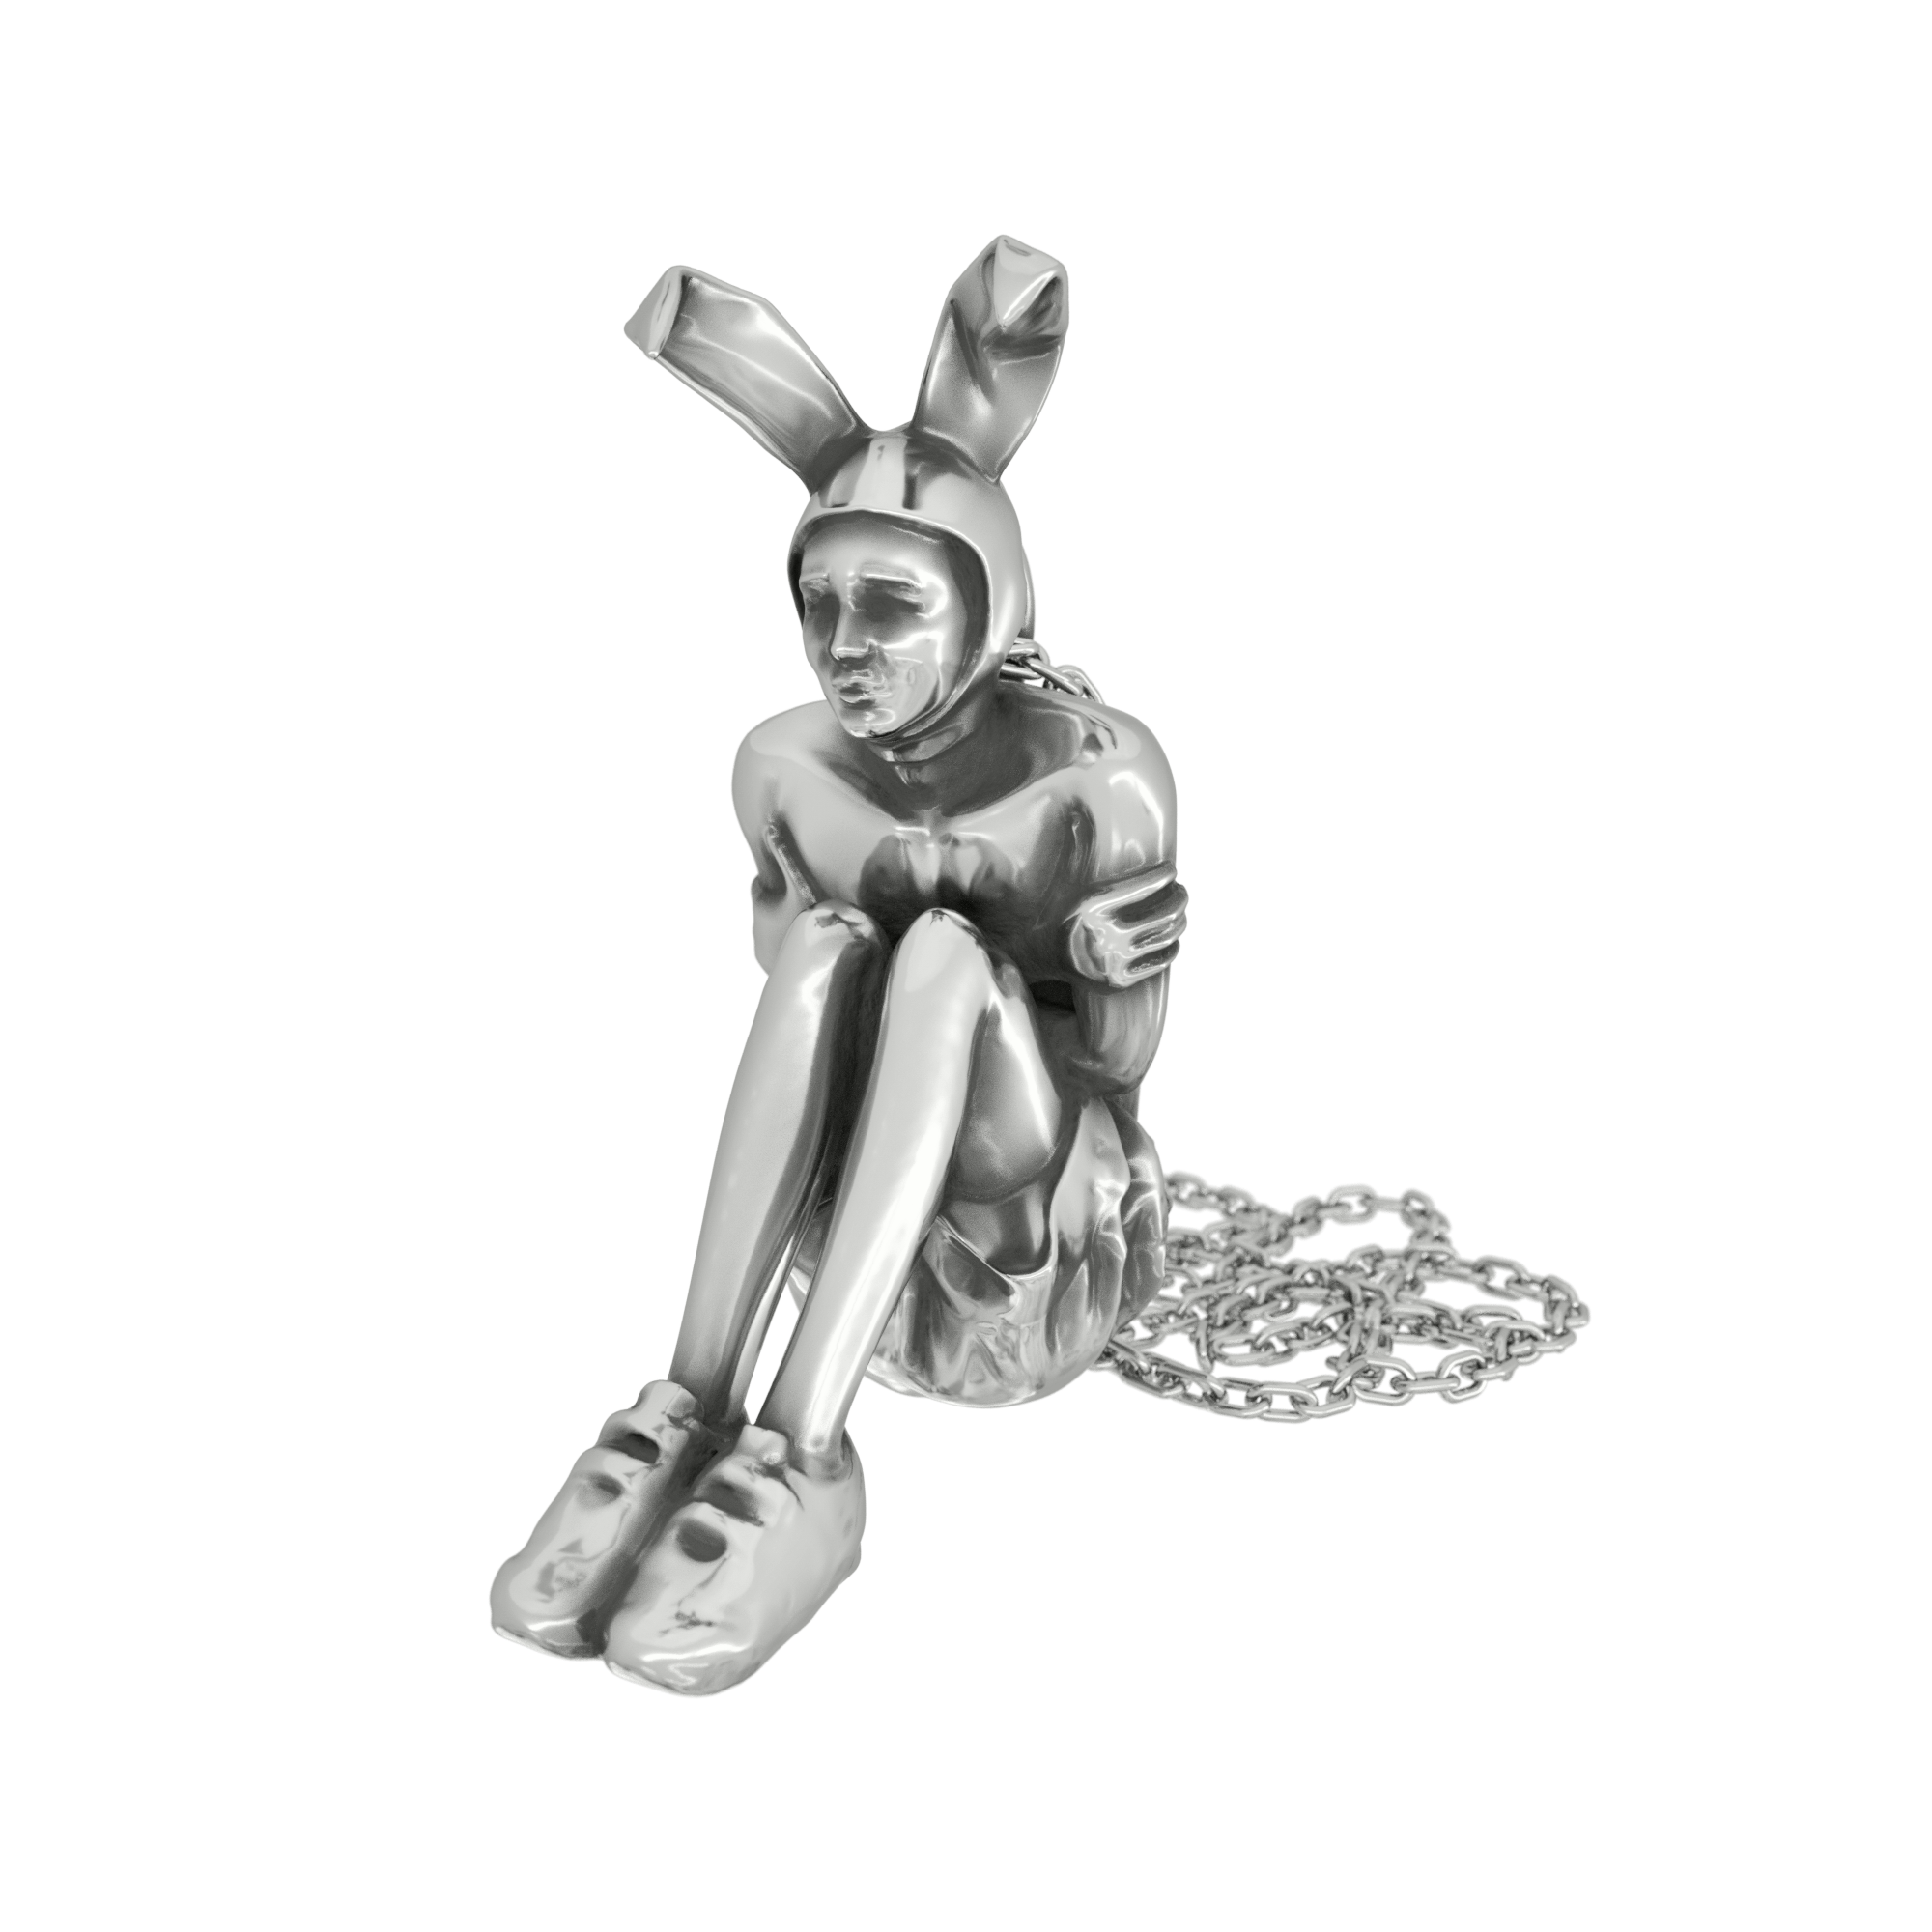 Bunny Boy Necklace - 925 Silver